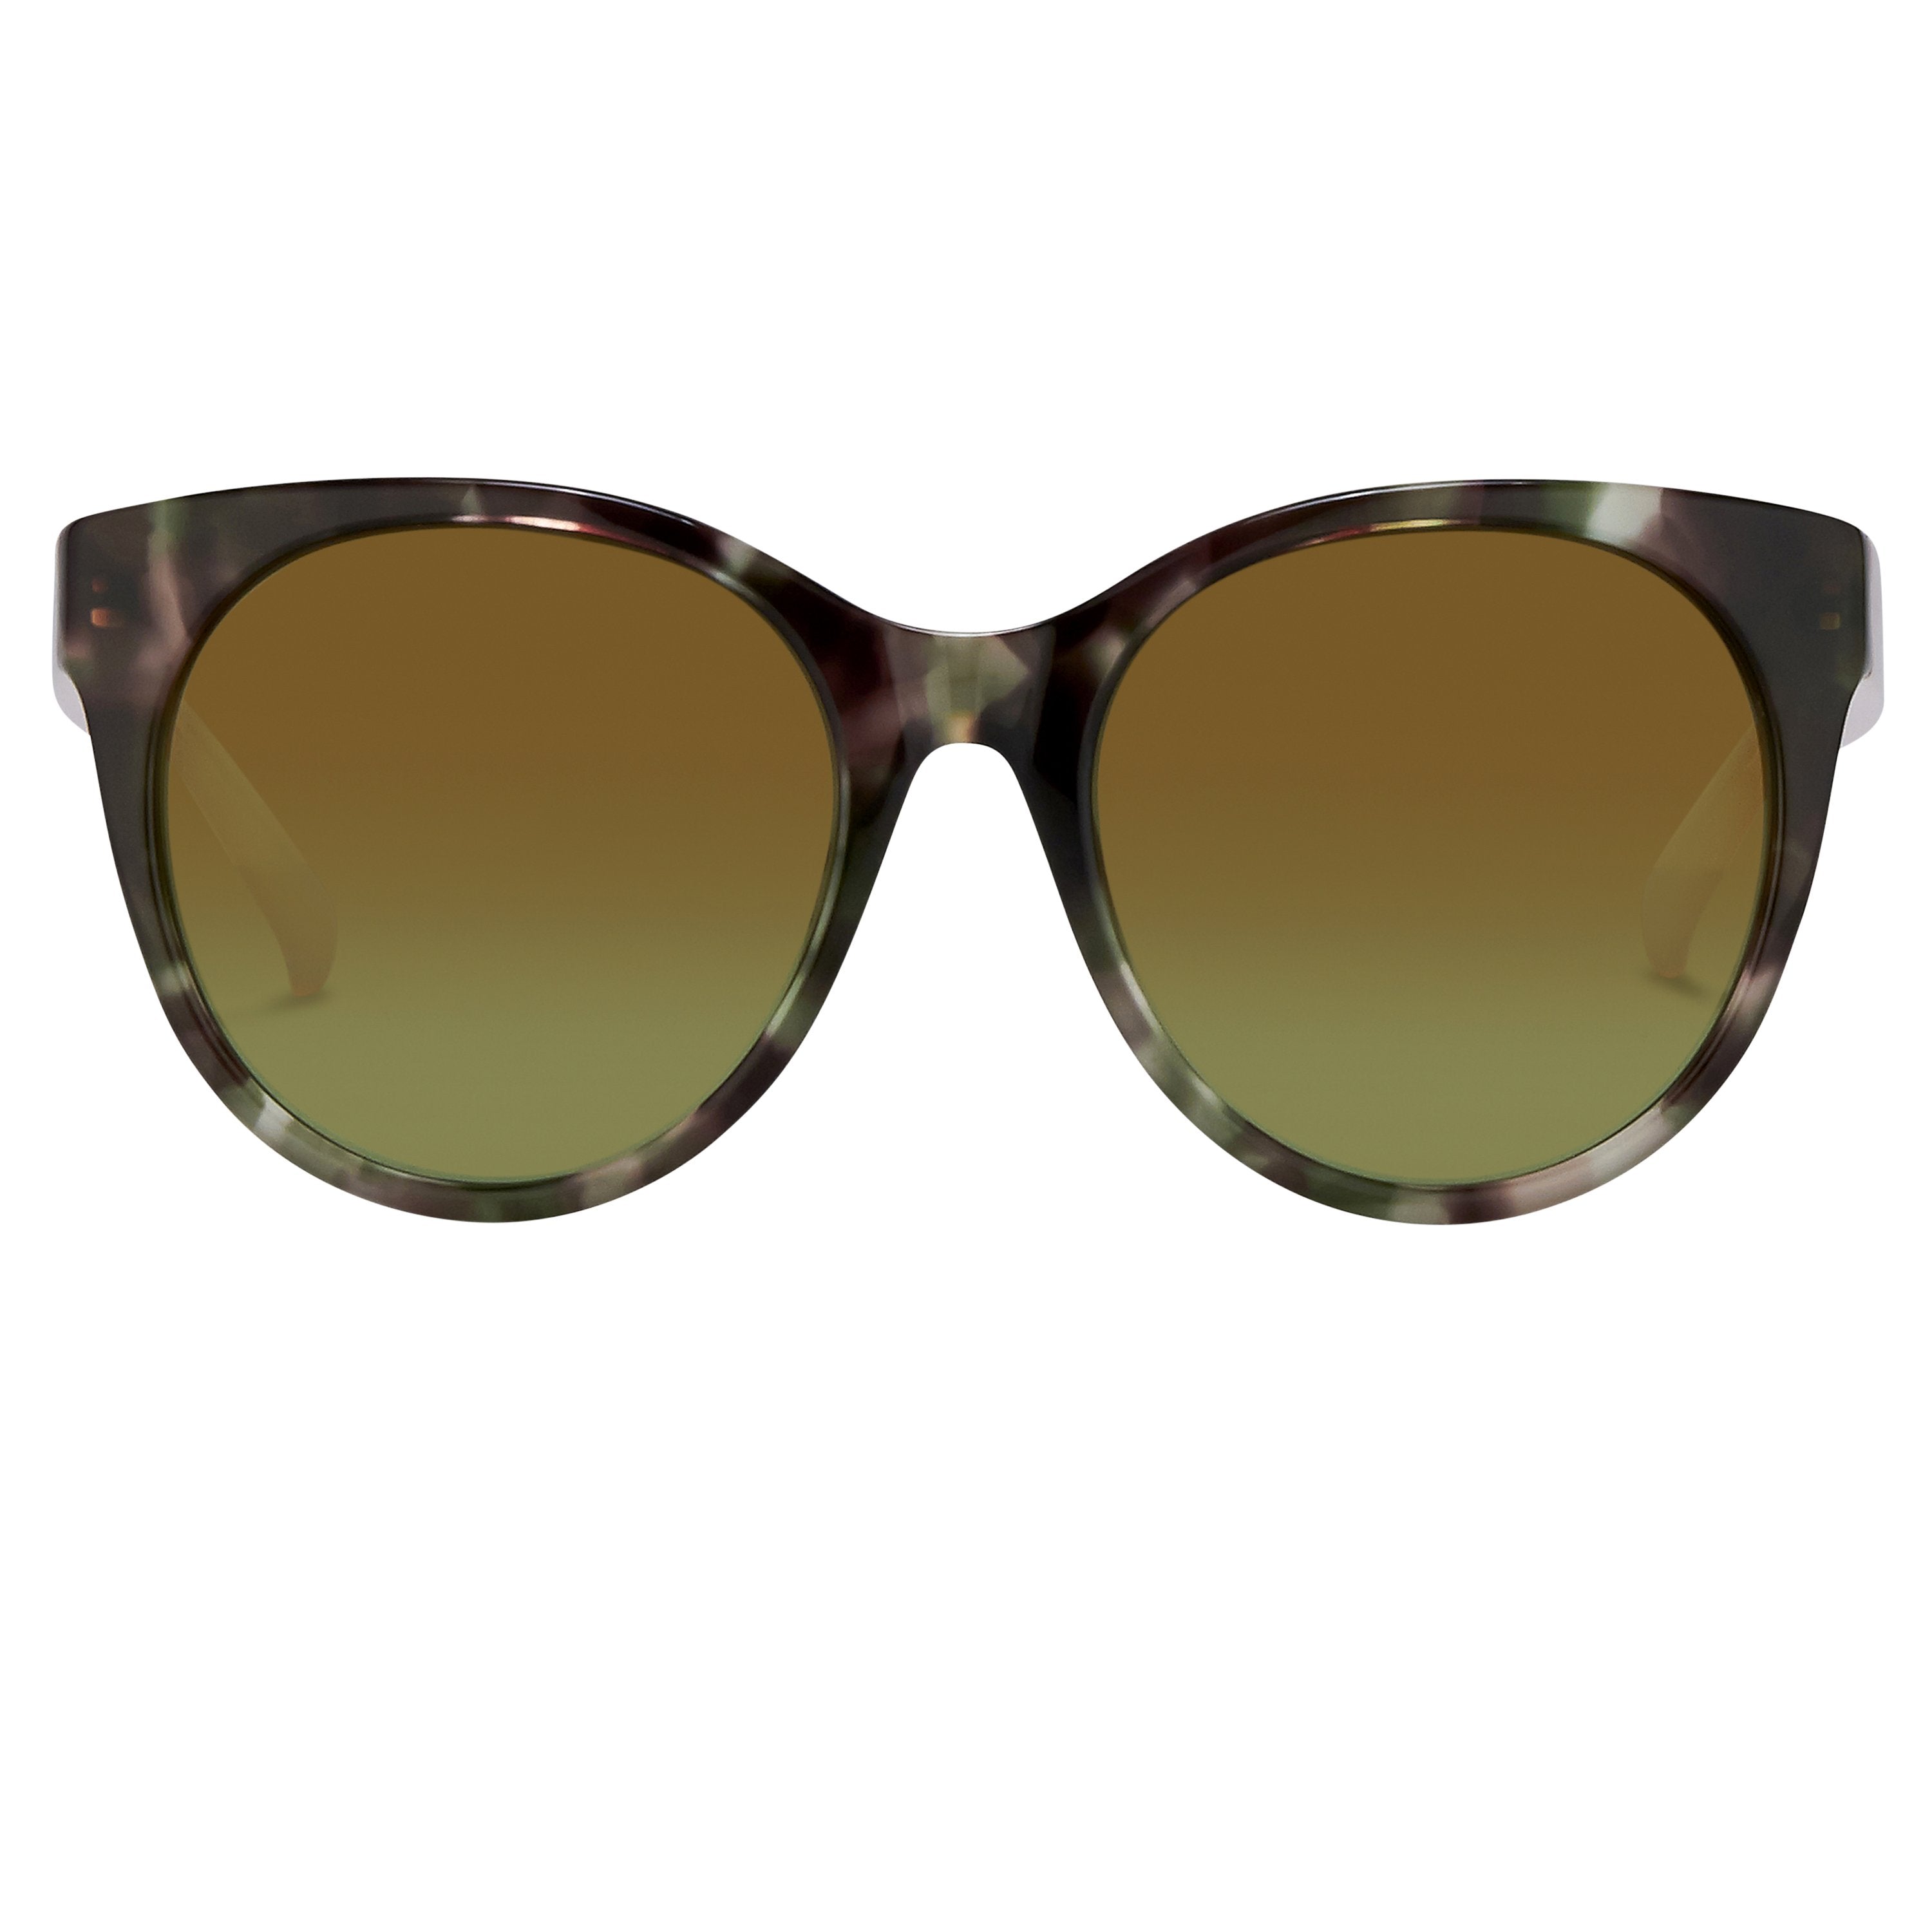 Color_MW151C5SUN - Matthew Williamson 151 C5 Oval Sunglasses